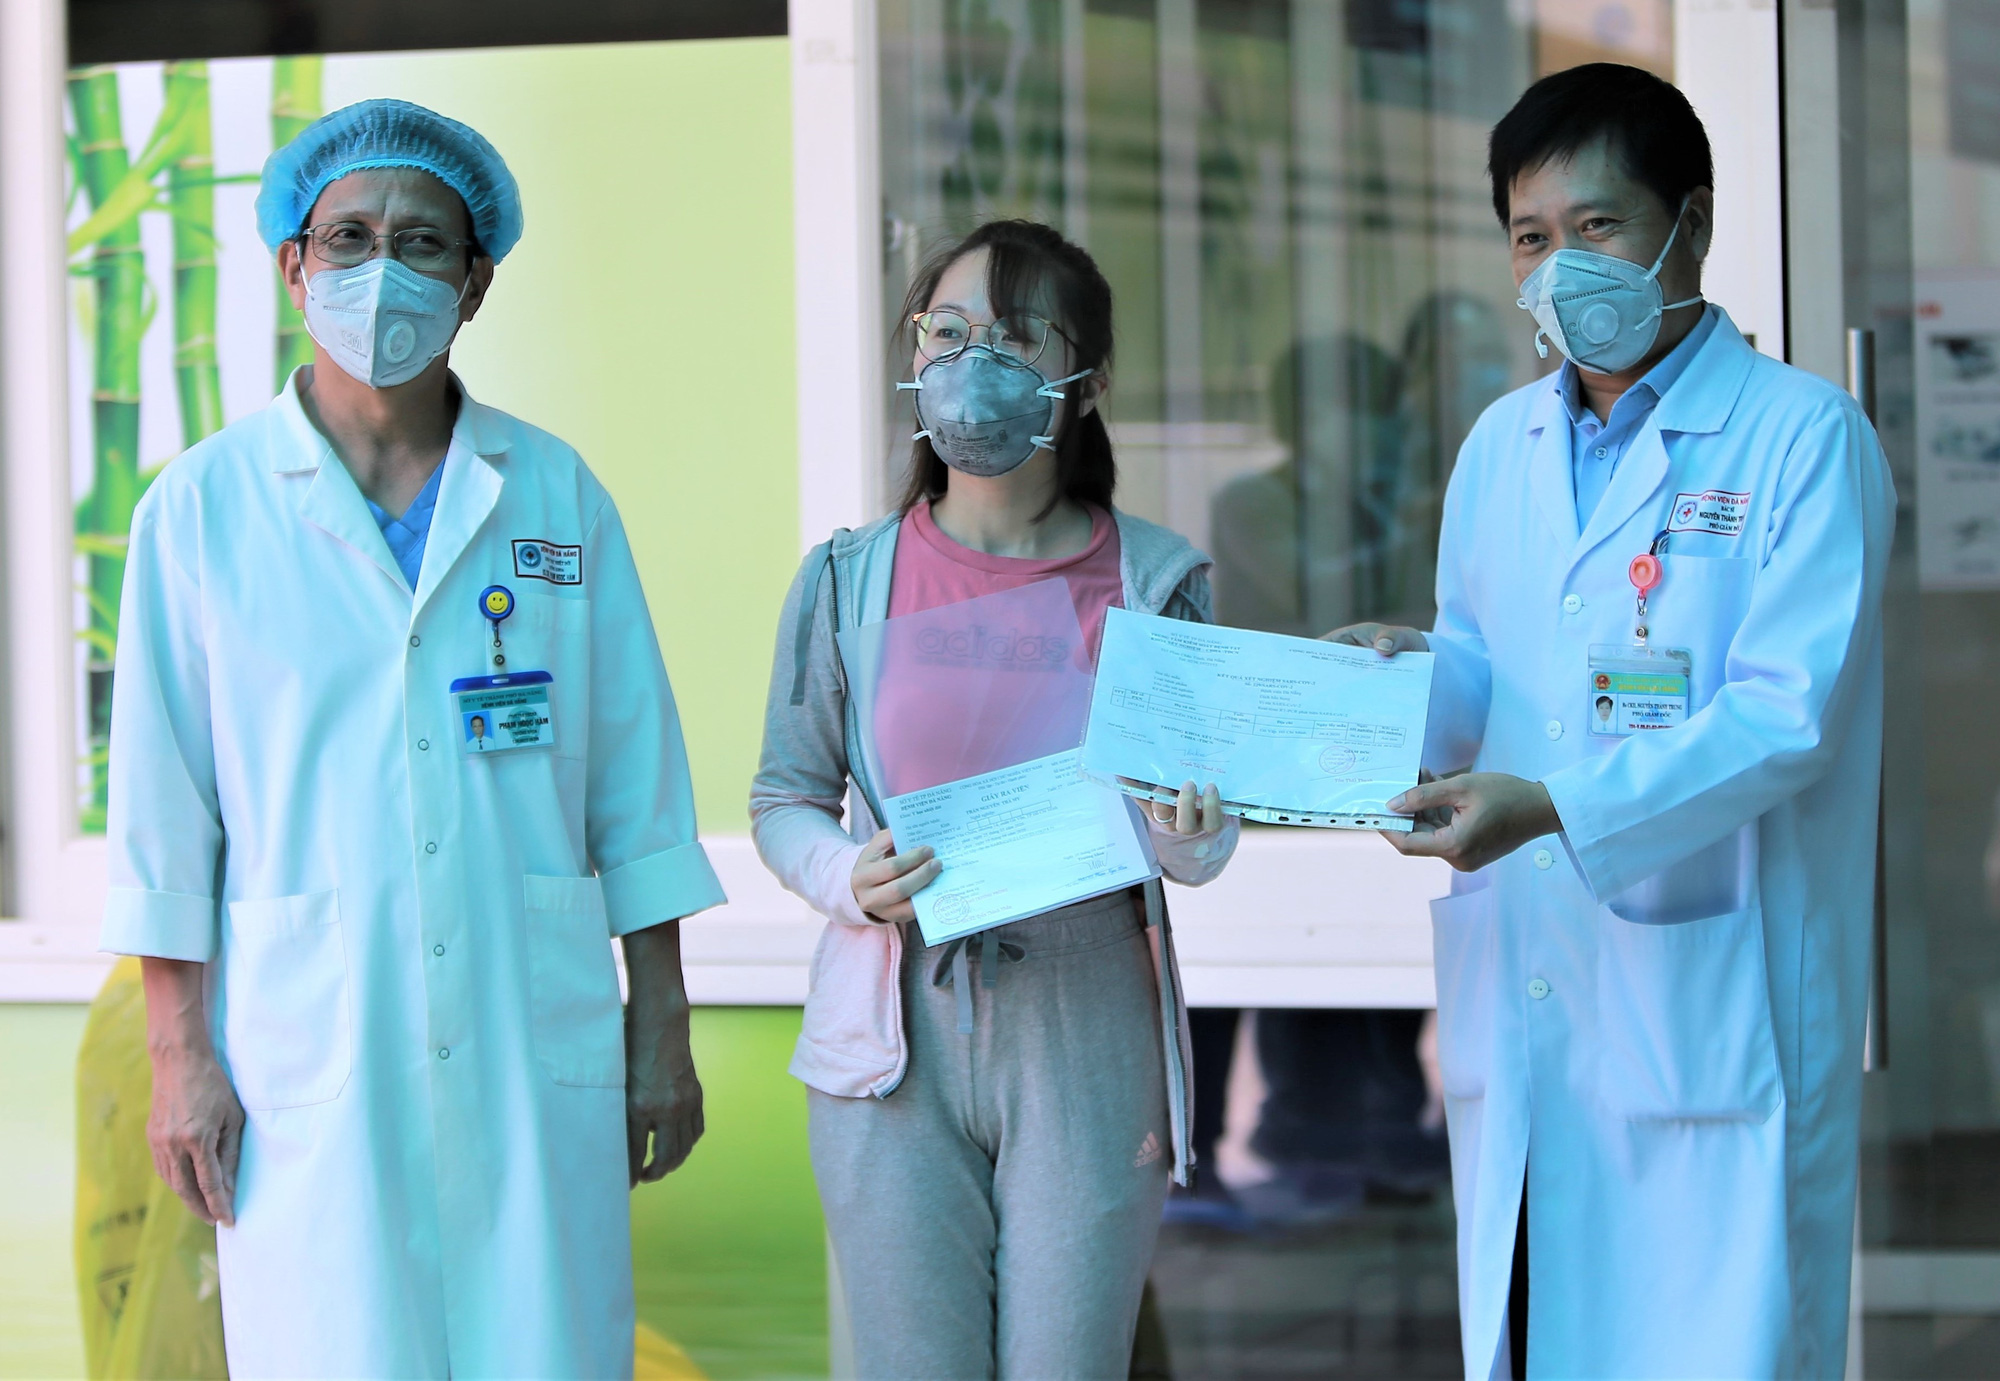 Bệnh nhân mắc Covid-19 cuối cùng ở Đà Nẵng xuất viện: Tôi rất cảm động vì sự chu đáo của các y bác sĩ - Ảnh 2.